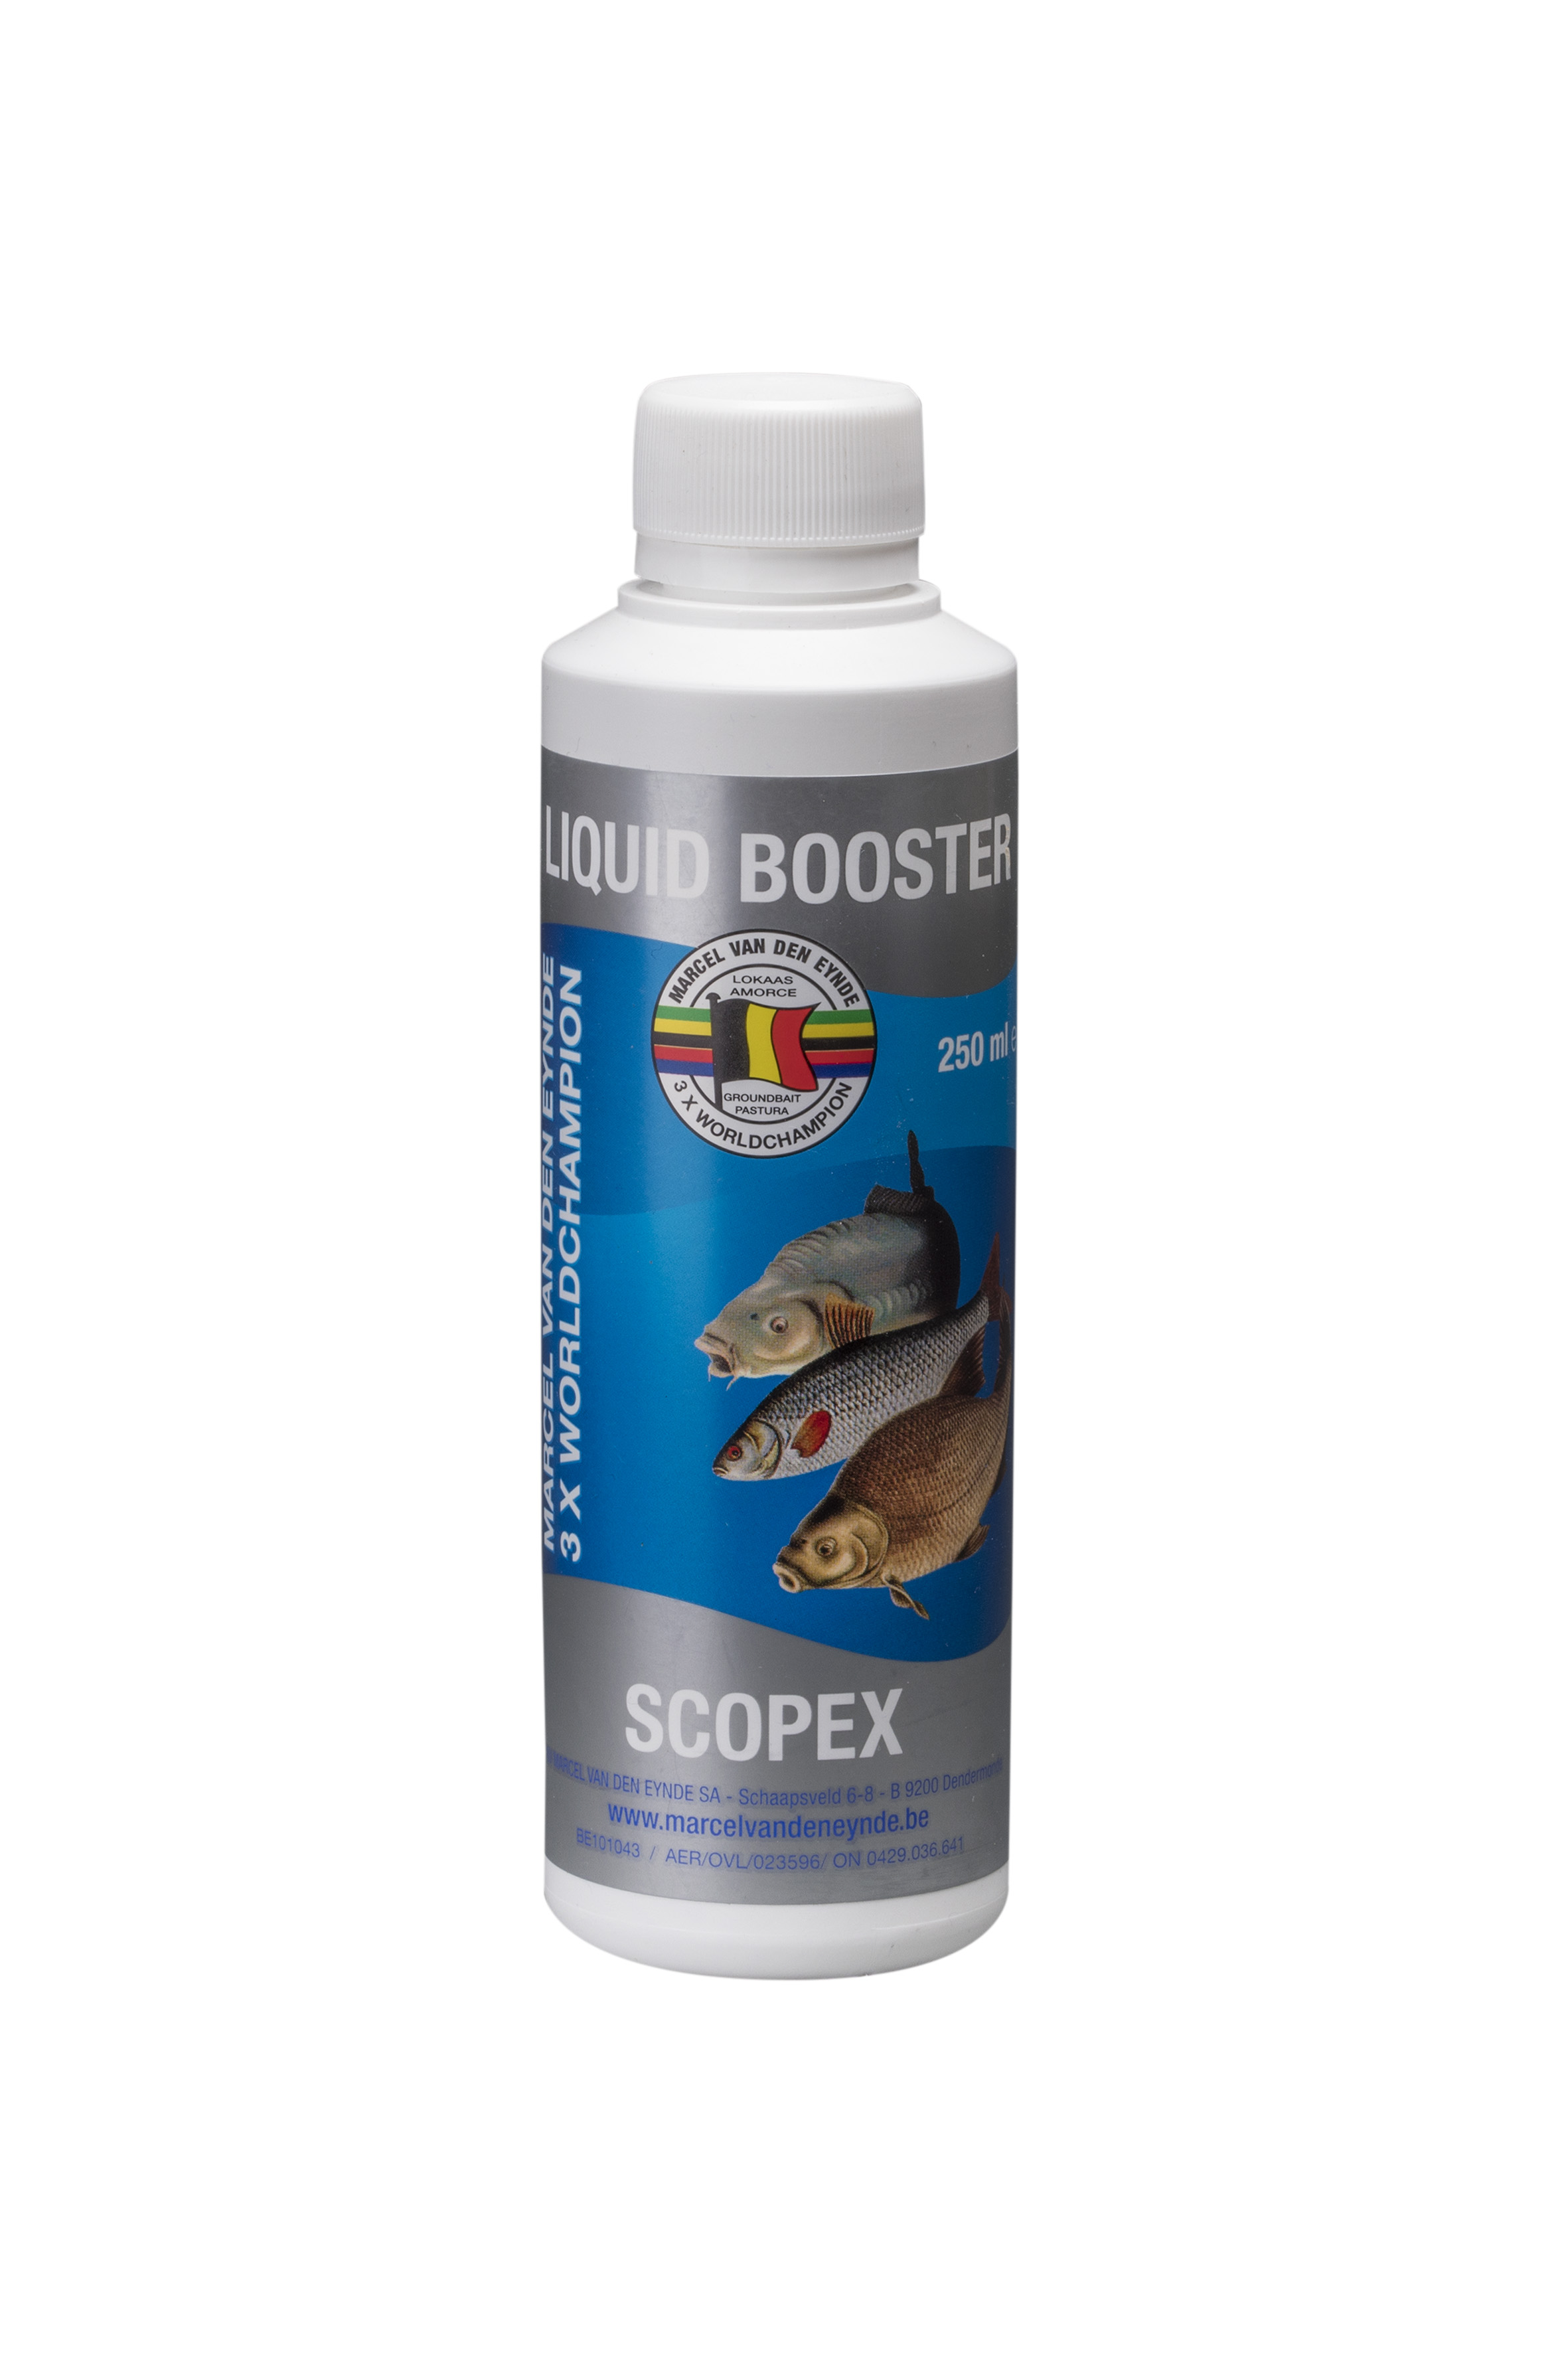 VDE Liquid Booster Scopex 250 ml (Scopex) -  Ime tečnog pojačivača govori sve, poboljšaće ukus i miris vašeg mamca. Koristili smo različite sastojke kako bismo napravili ukusan proizvod koji se može koristiti u mamcima, peletima i česticama. Tečni pojačivači su mnogo intenzivniji od našeg asortimana tekućih aroma, zato preporučujemo upotrebu 125 ml za 4 kg mamaca. Cijena: 12.50 BAM